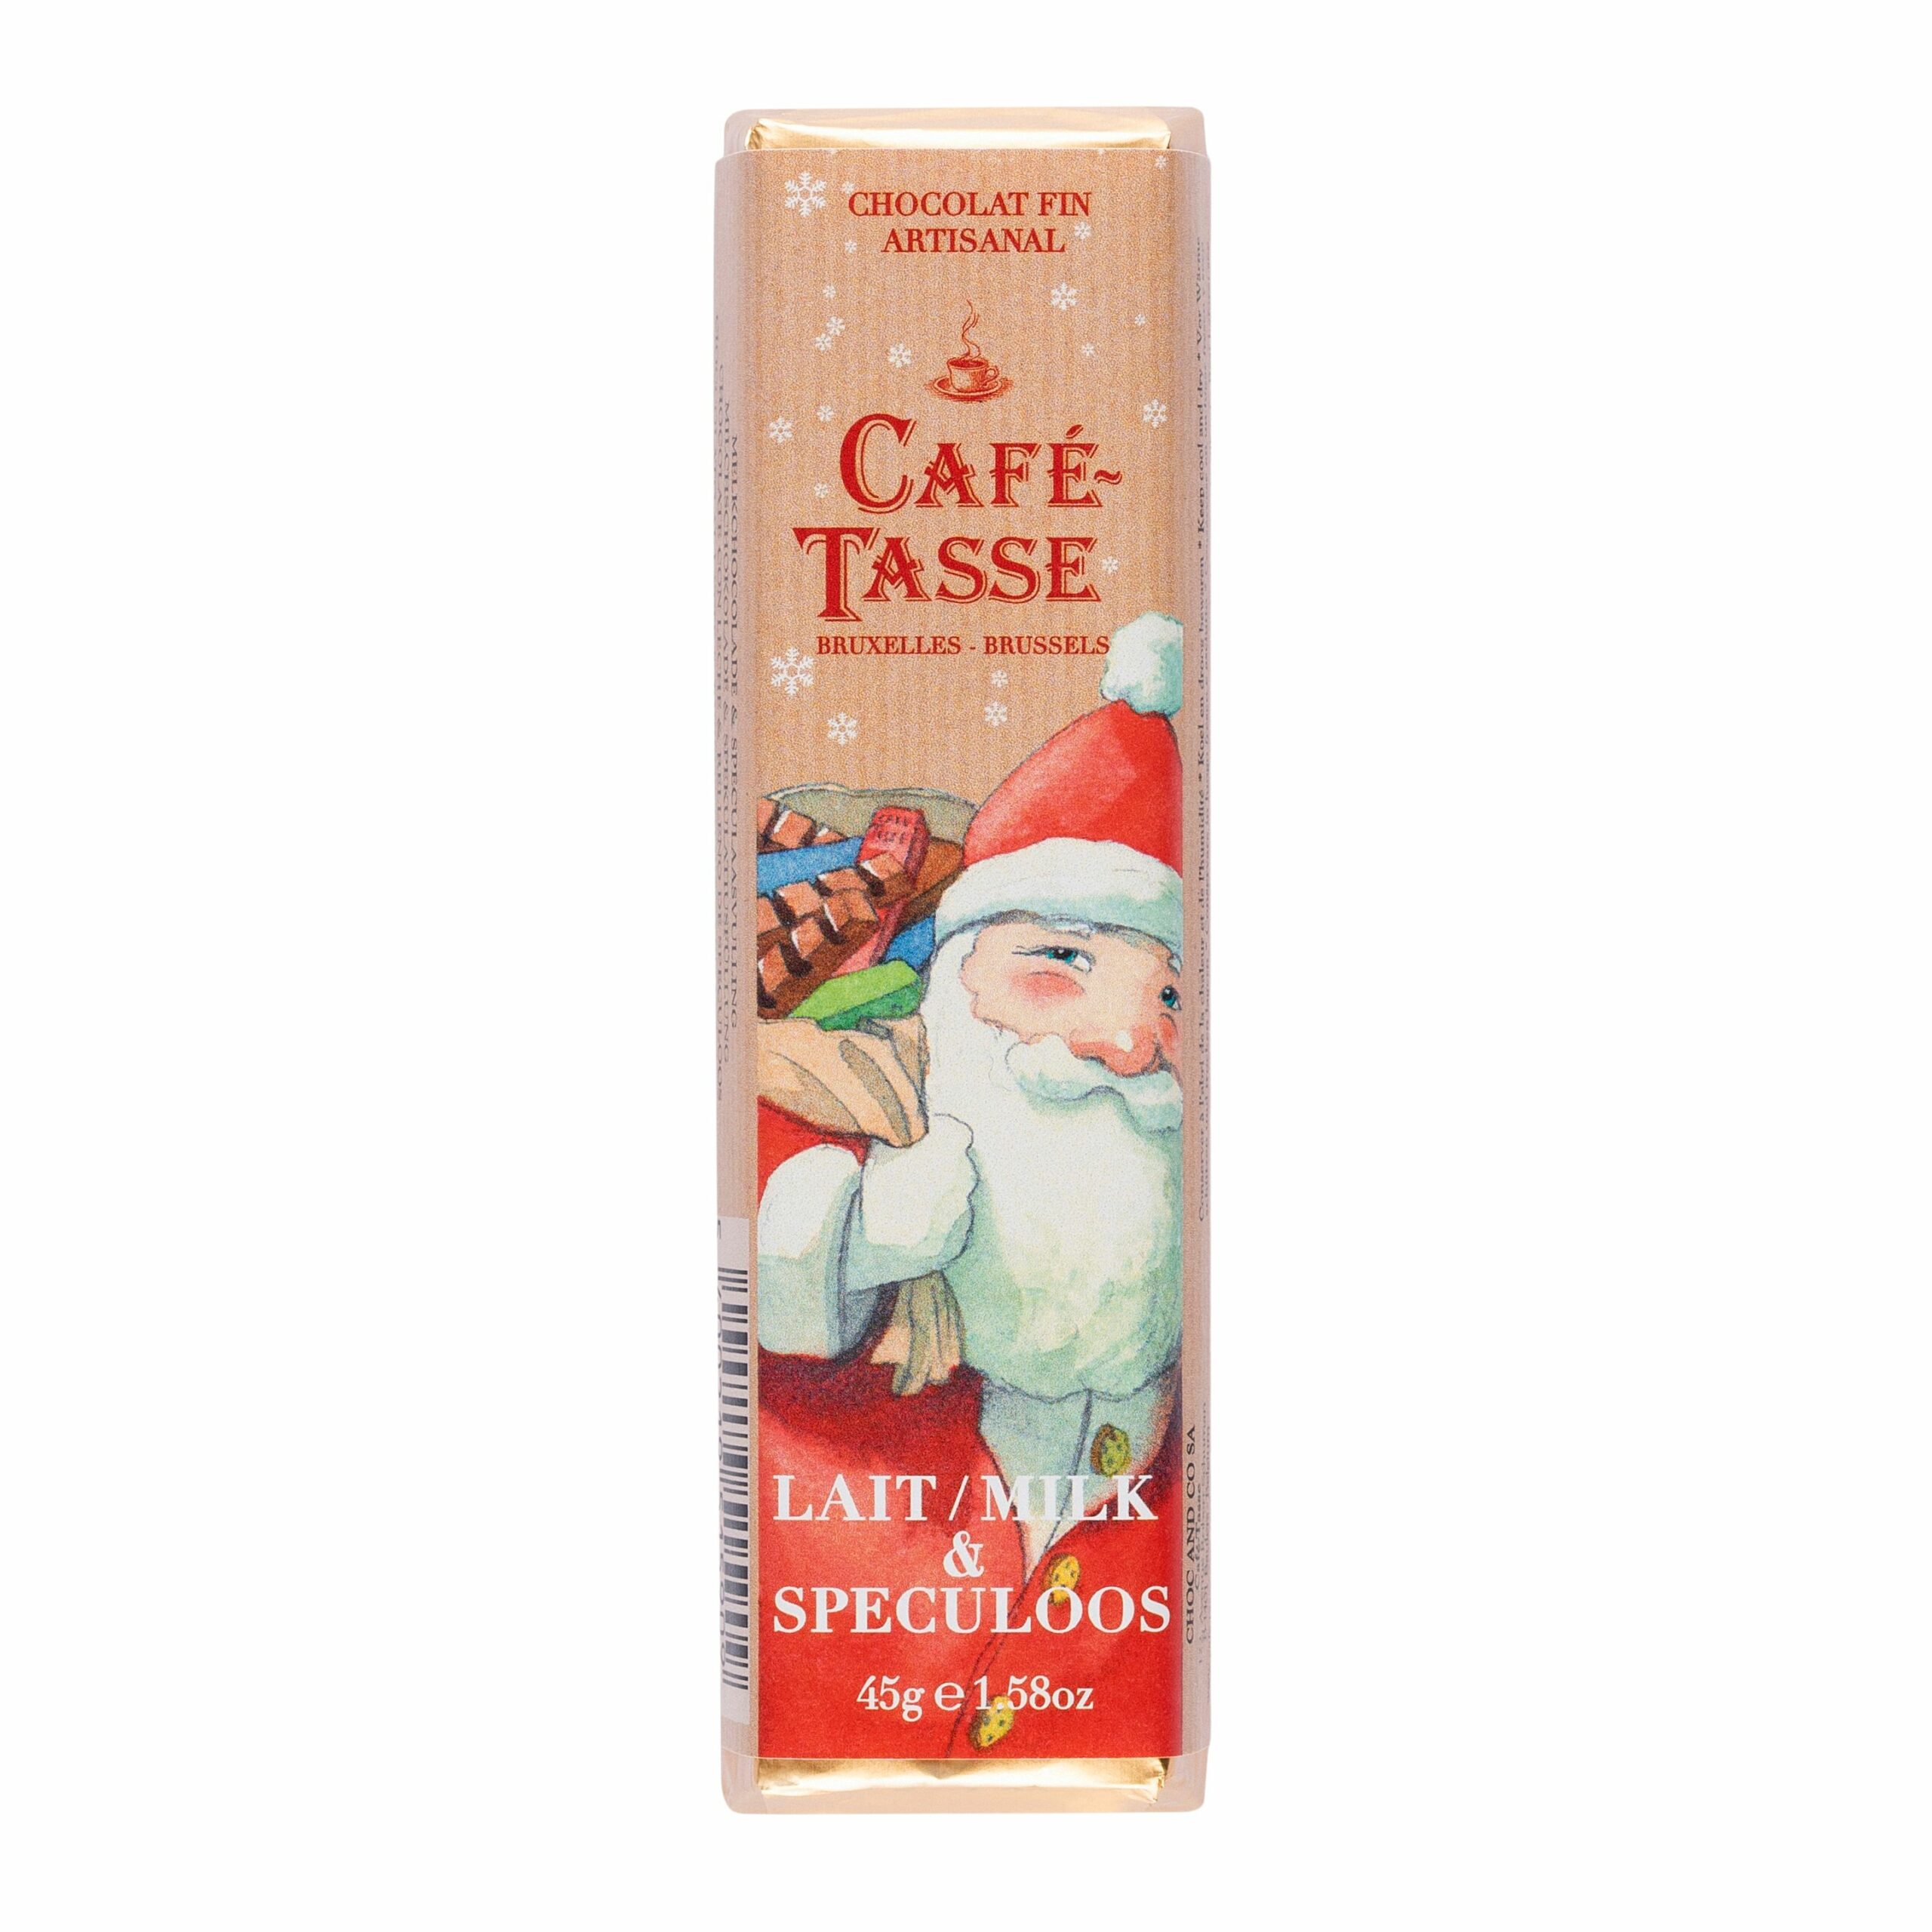 Café-Tasse, Christmas Bar Milk Speculoos